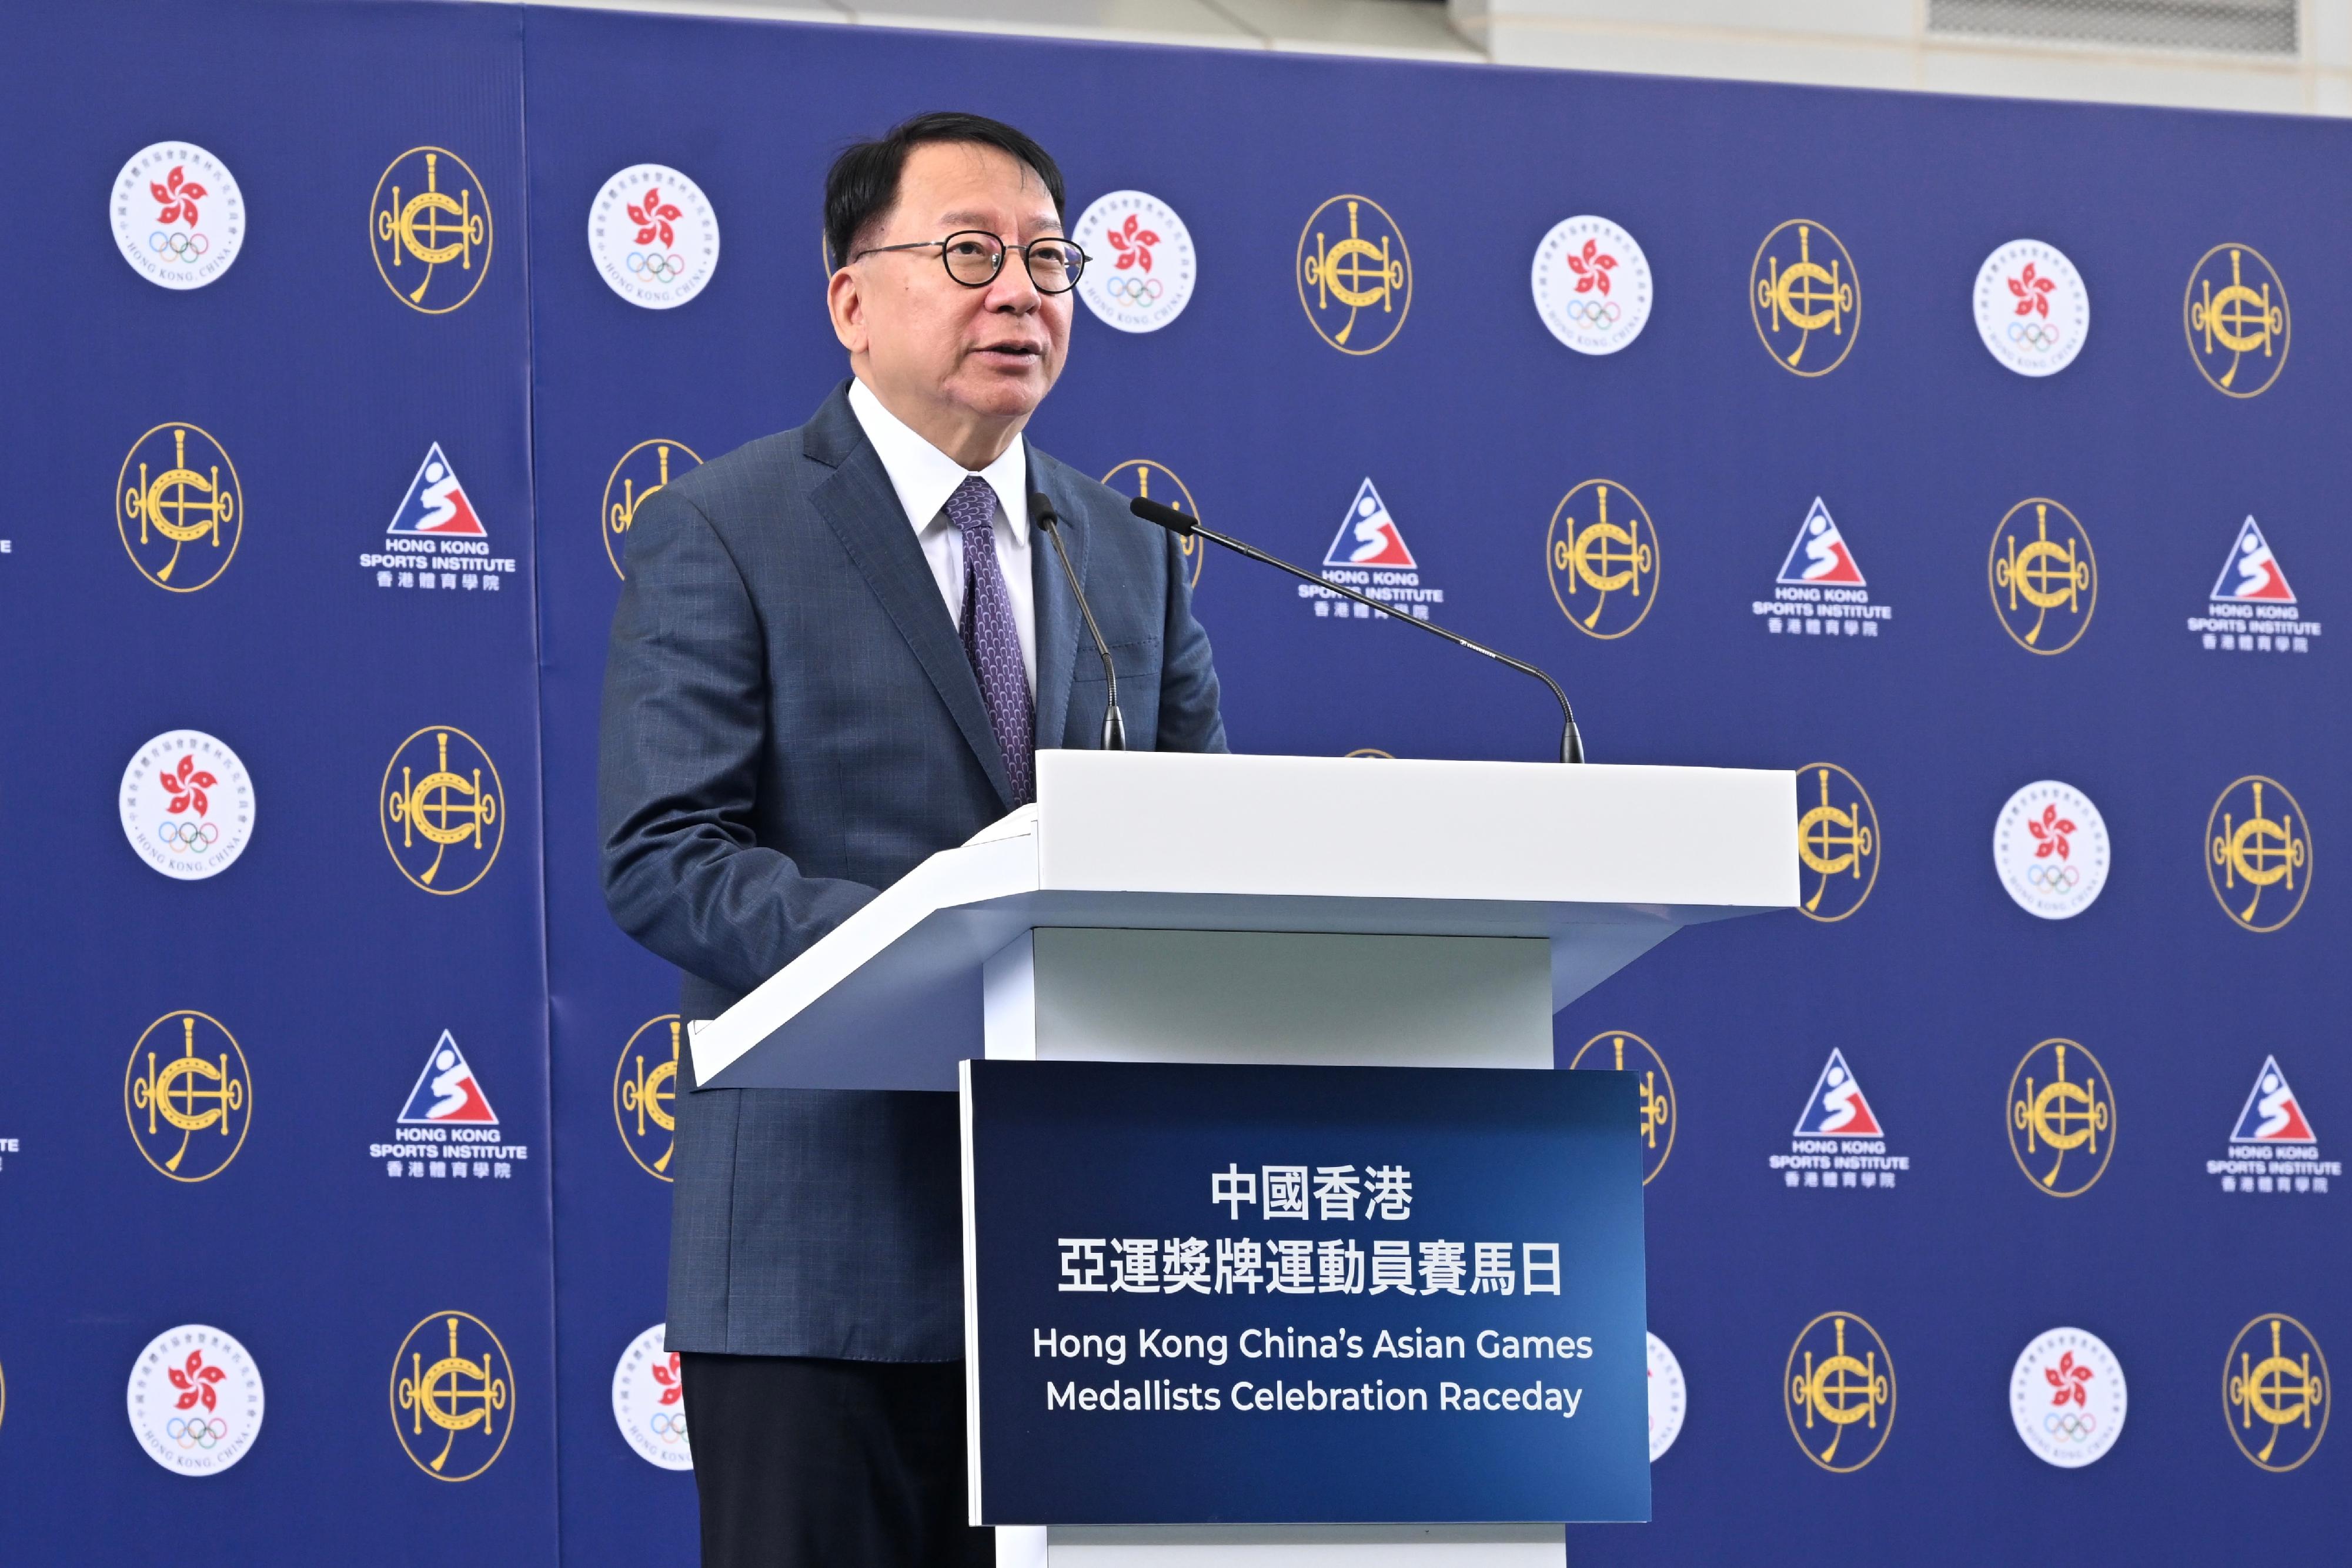 政務司司長陳國基今日（十月二十二日）在中國香港亞運獎牌運動員賽馬日開幕儀式致辭。